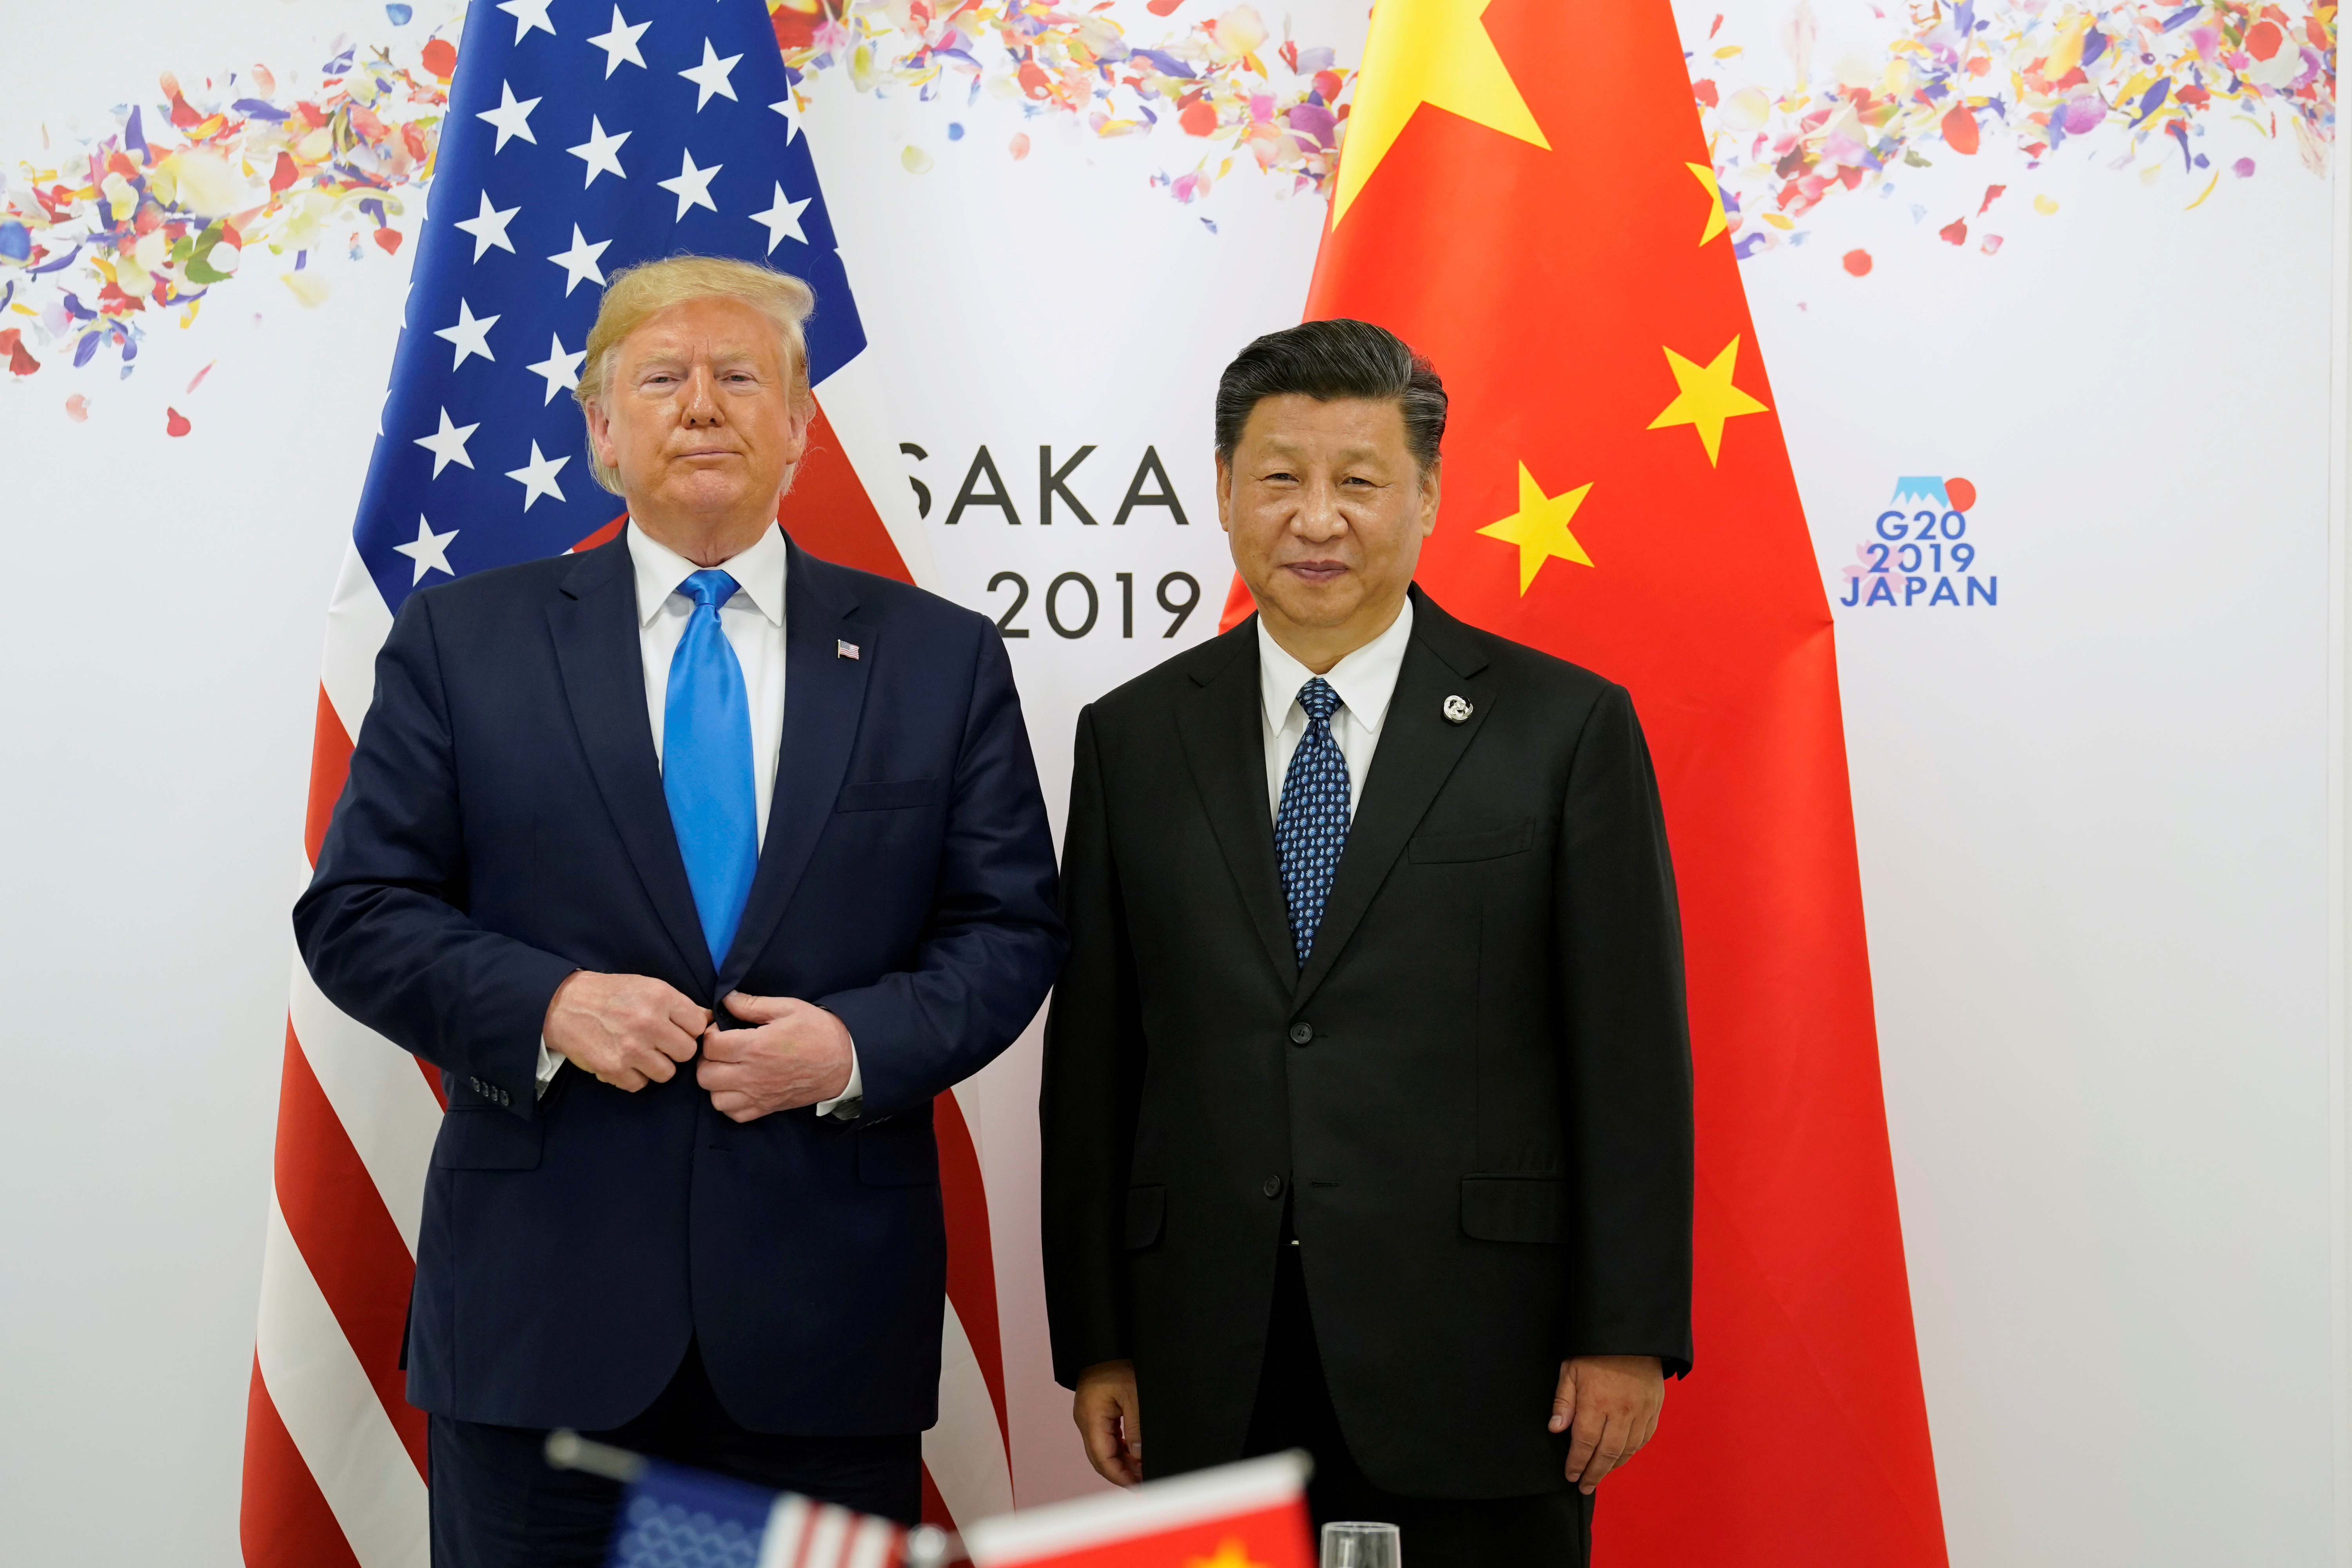 Aumento de tensión entre EEUU y China desvanece esperanzas de fin a guerra comercial